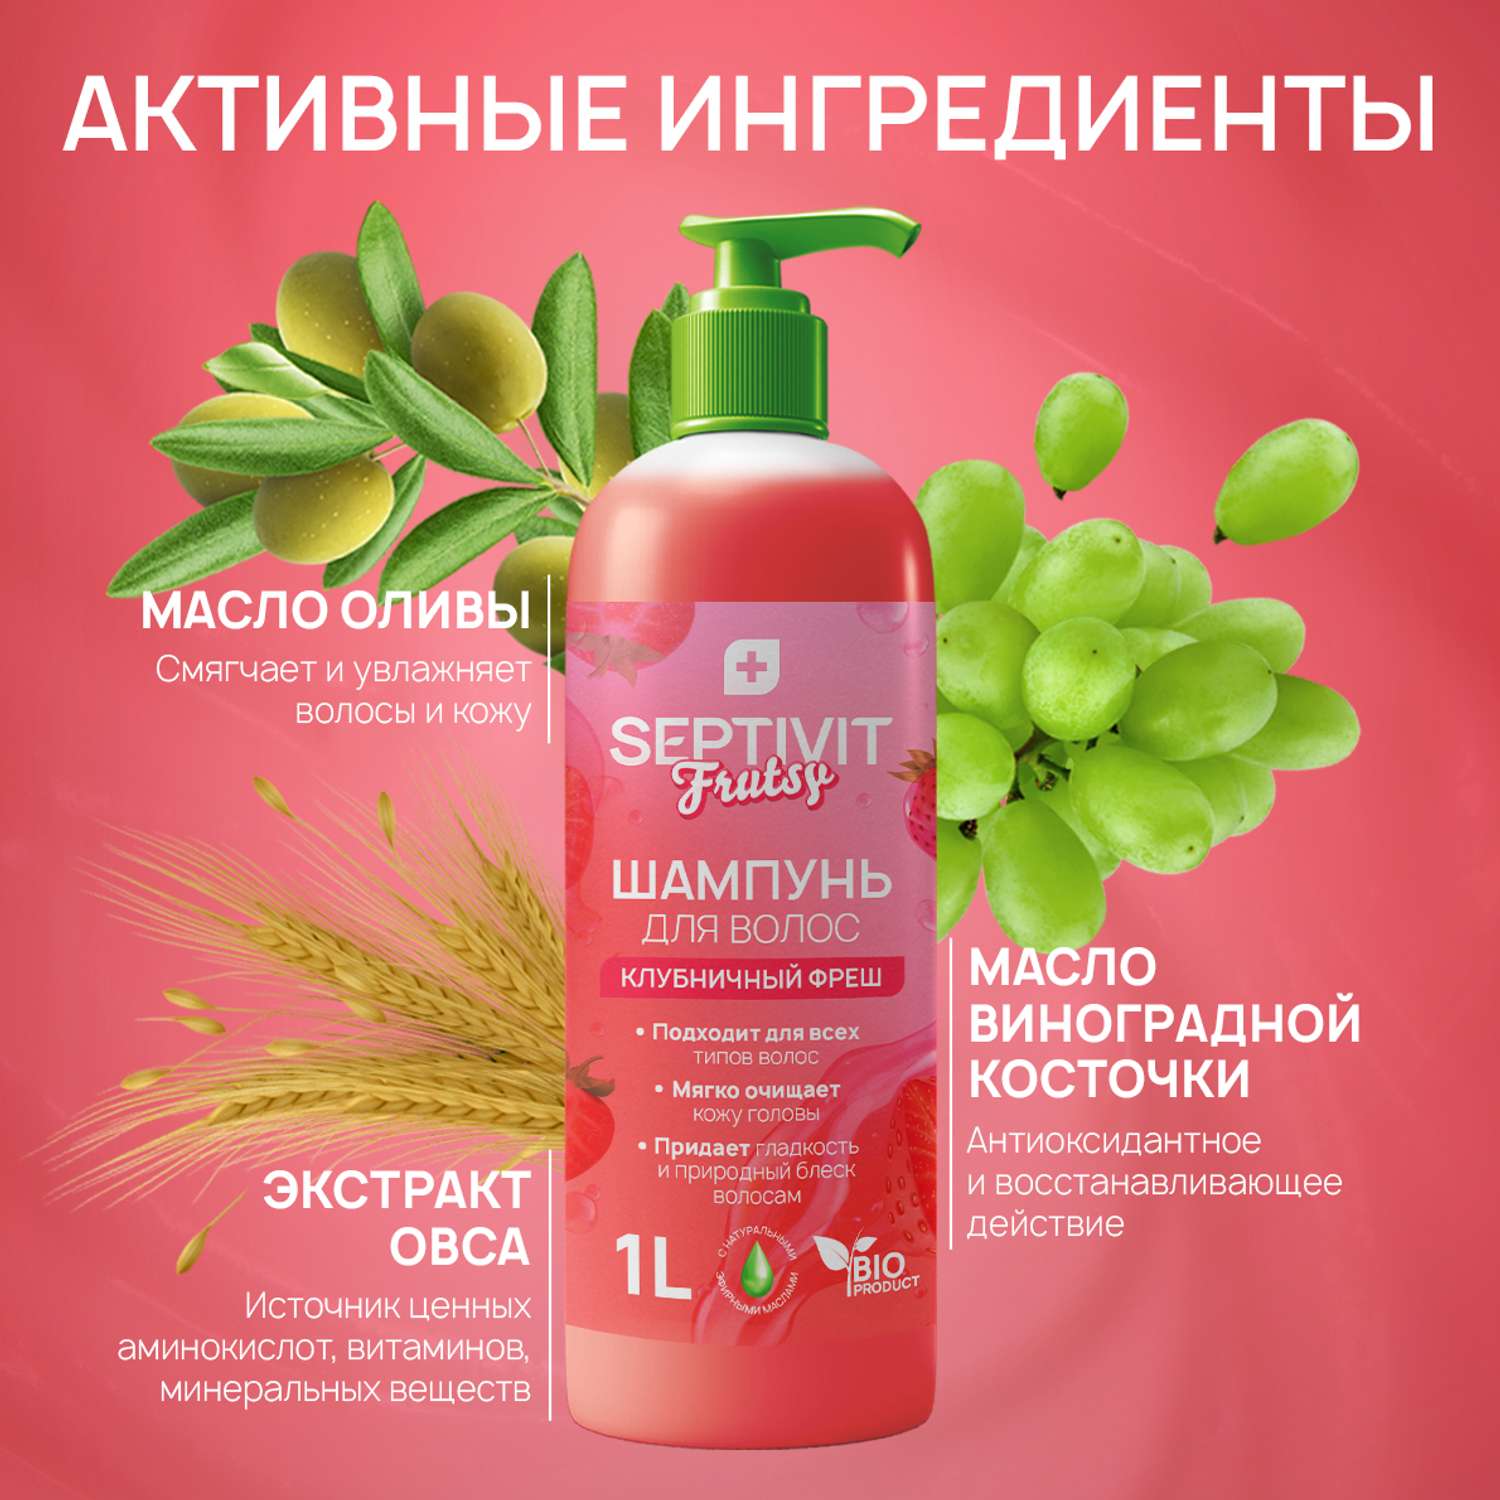 Шампунь для волос SEPTIVIT Premium Frutsy клубничный фреш 1 л - фото 6